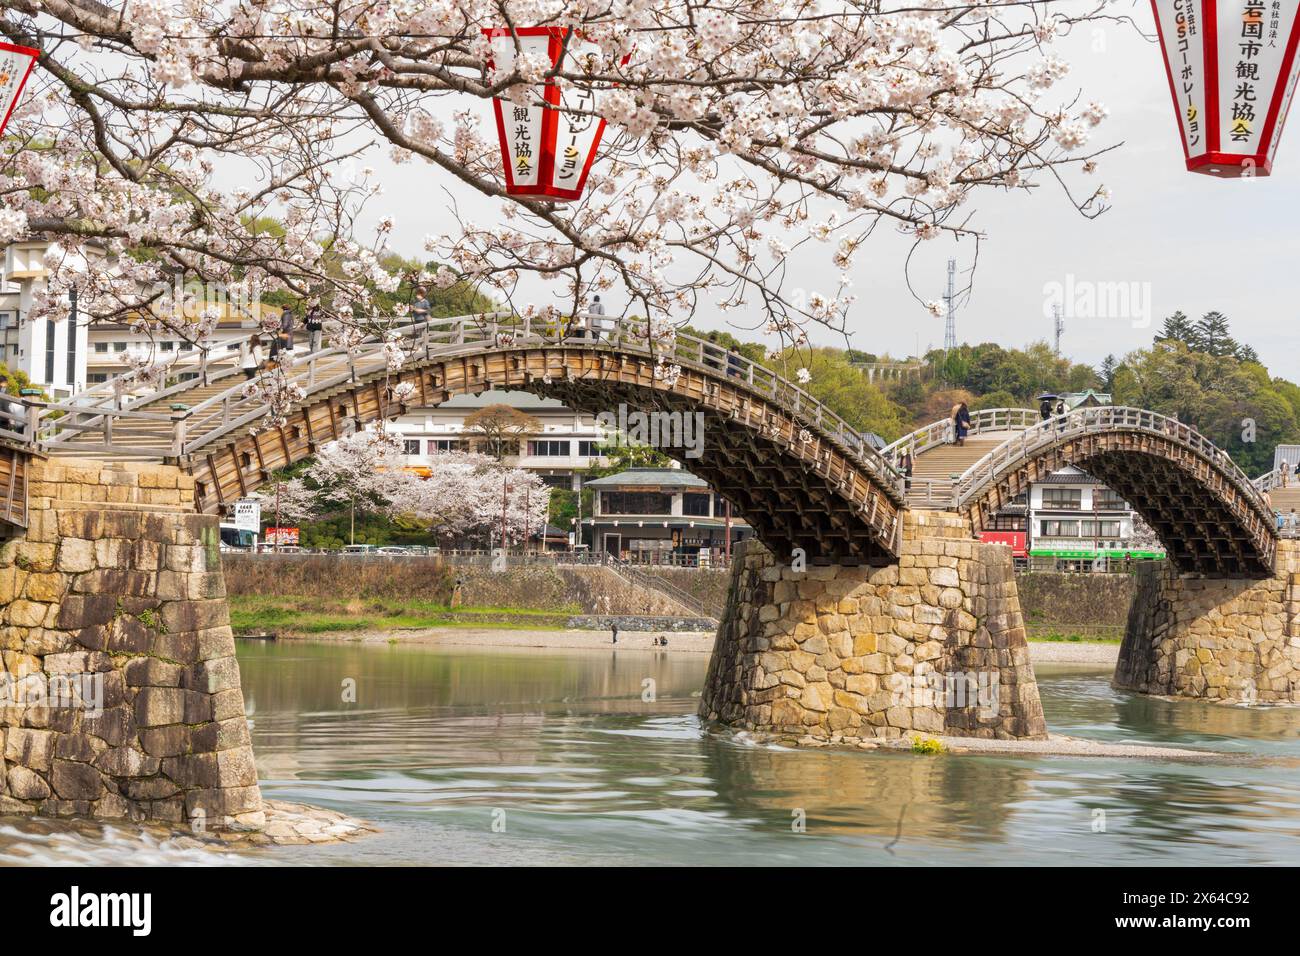 Kintai Bridge Sakura Festival. Les cerisiers fleurissent le long de la rive de la rivière Nishiki. Iwakuni, préfecture de Yamaguchi, Japon. Banque D'Images